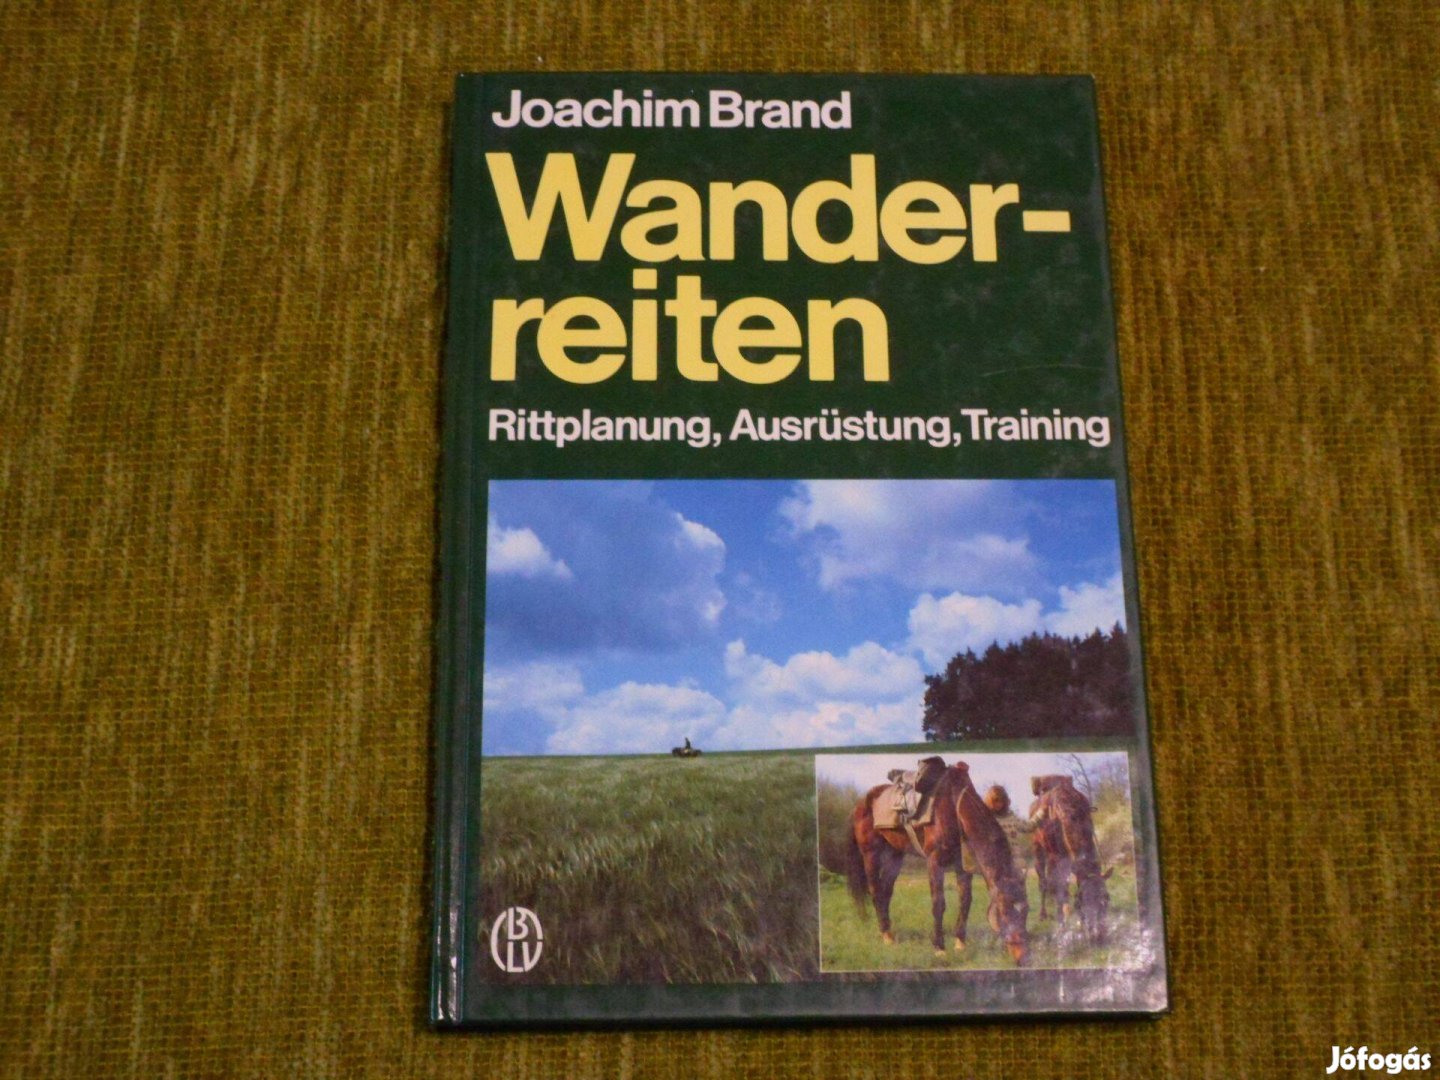 Joachim Brand: Wanderreiten (lovas barangolás) német nyelvű könyv